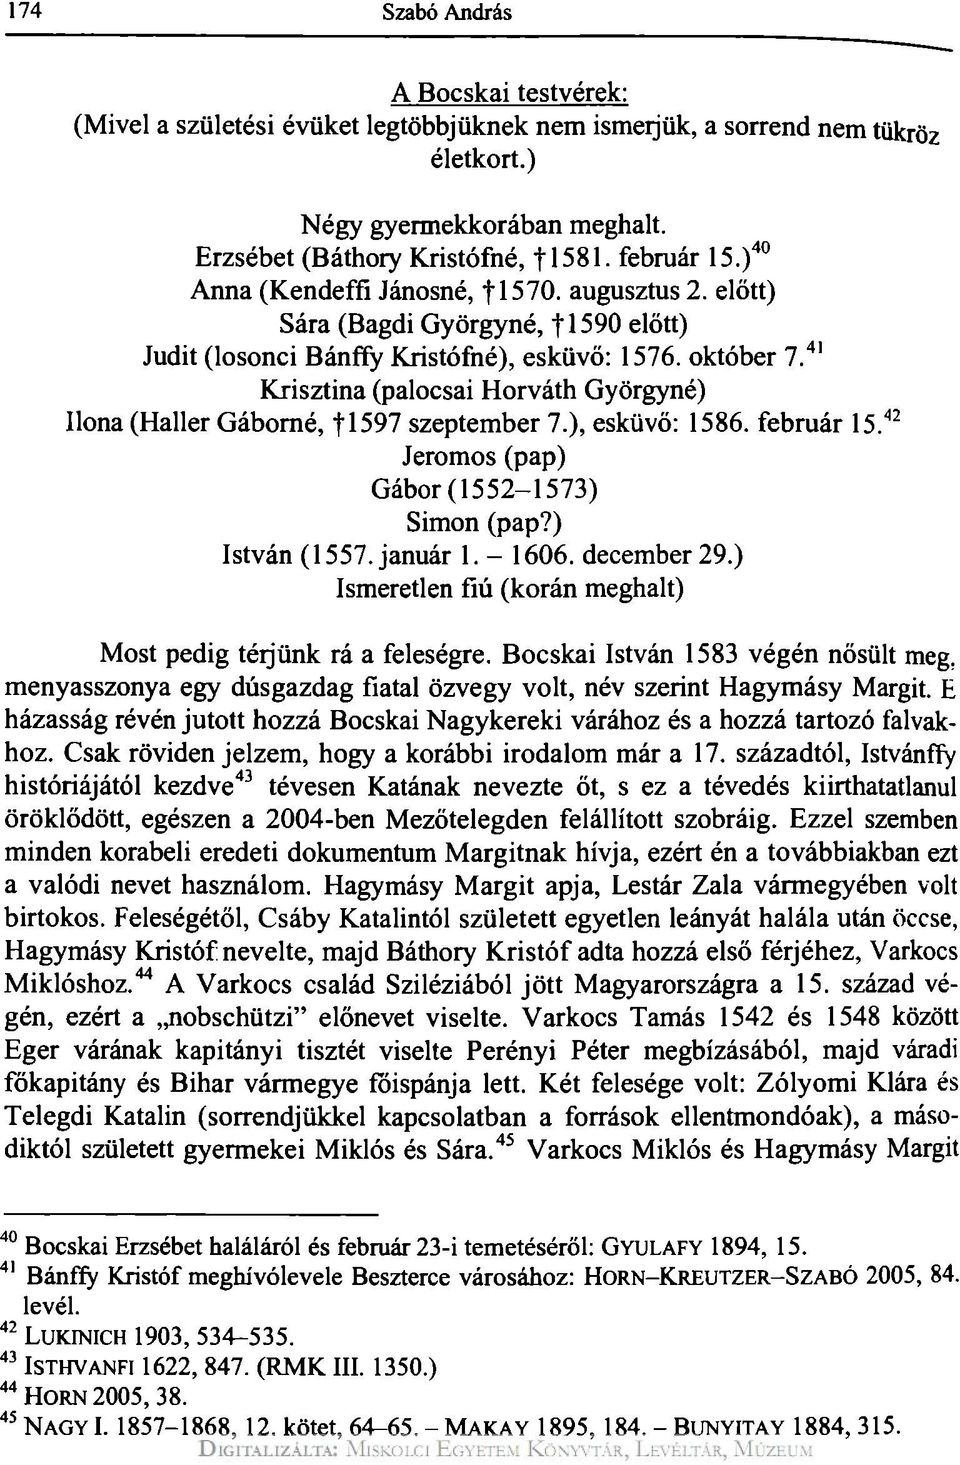 41 Krisztina (palocsai Horváth Györgyné) Ilona (Haller Gáborné, fi597 szeptember 7.), esküvő: 1586. február 15. 42 Jeromos (pap) Gábor(1552-1573) Simon (pap?) István (1557. január 1. - 1606.